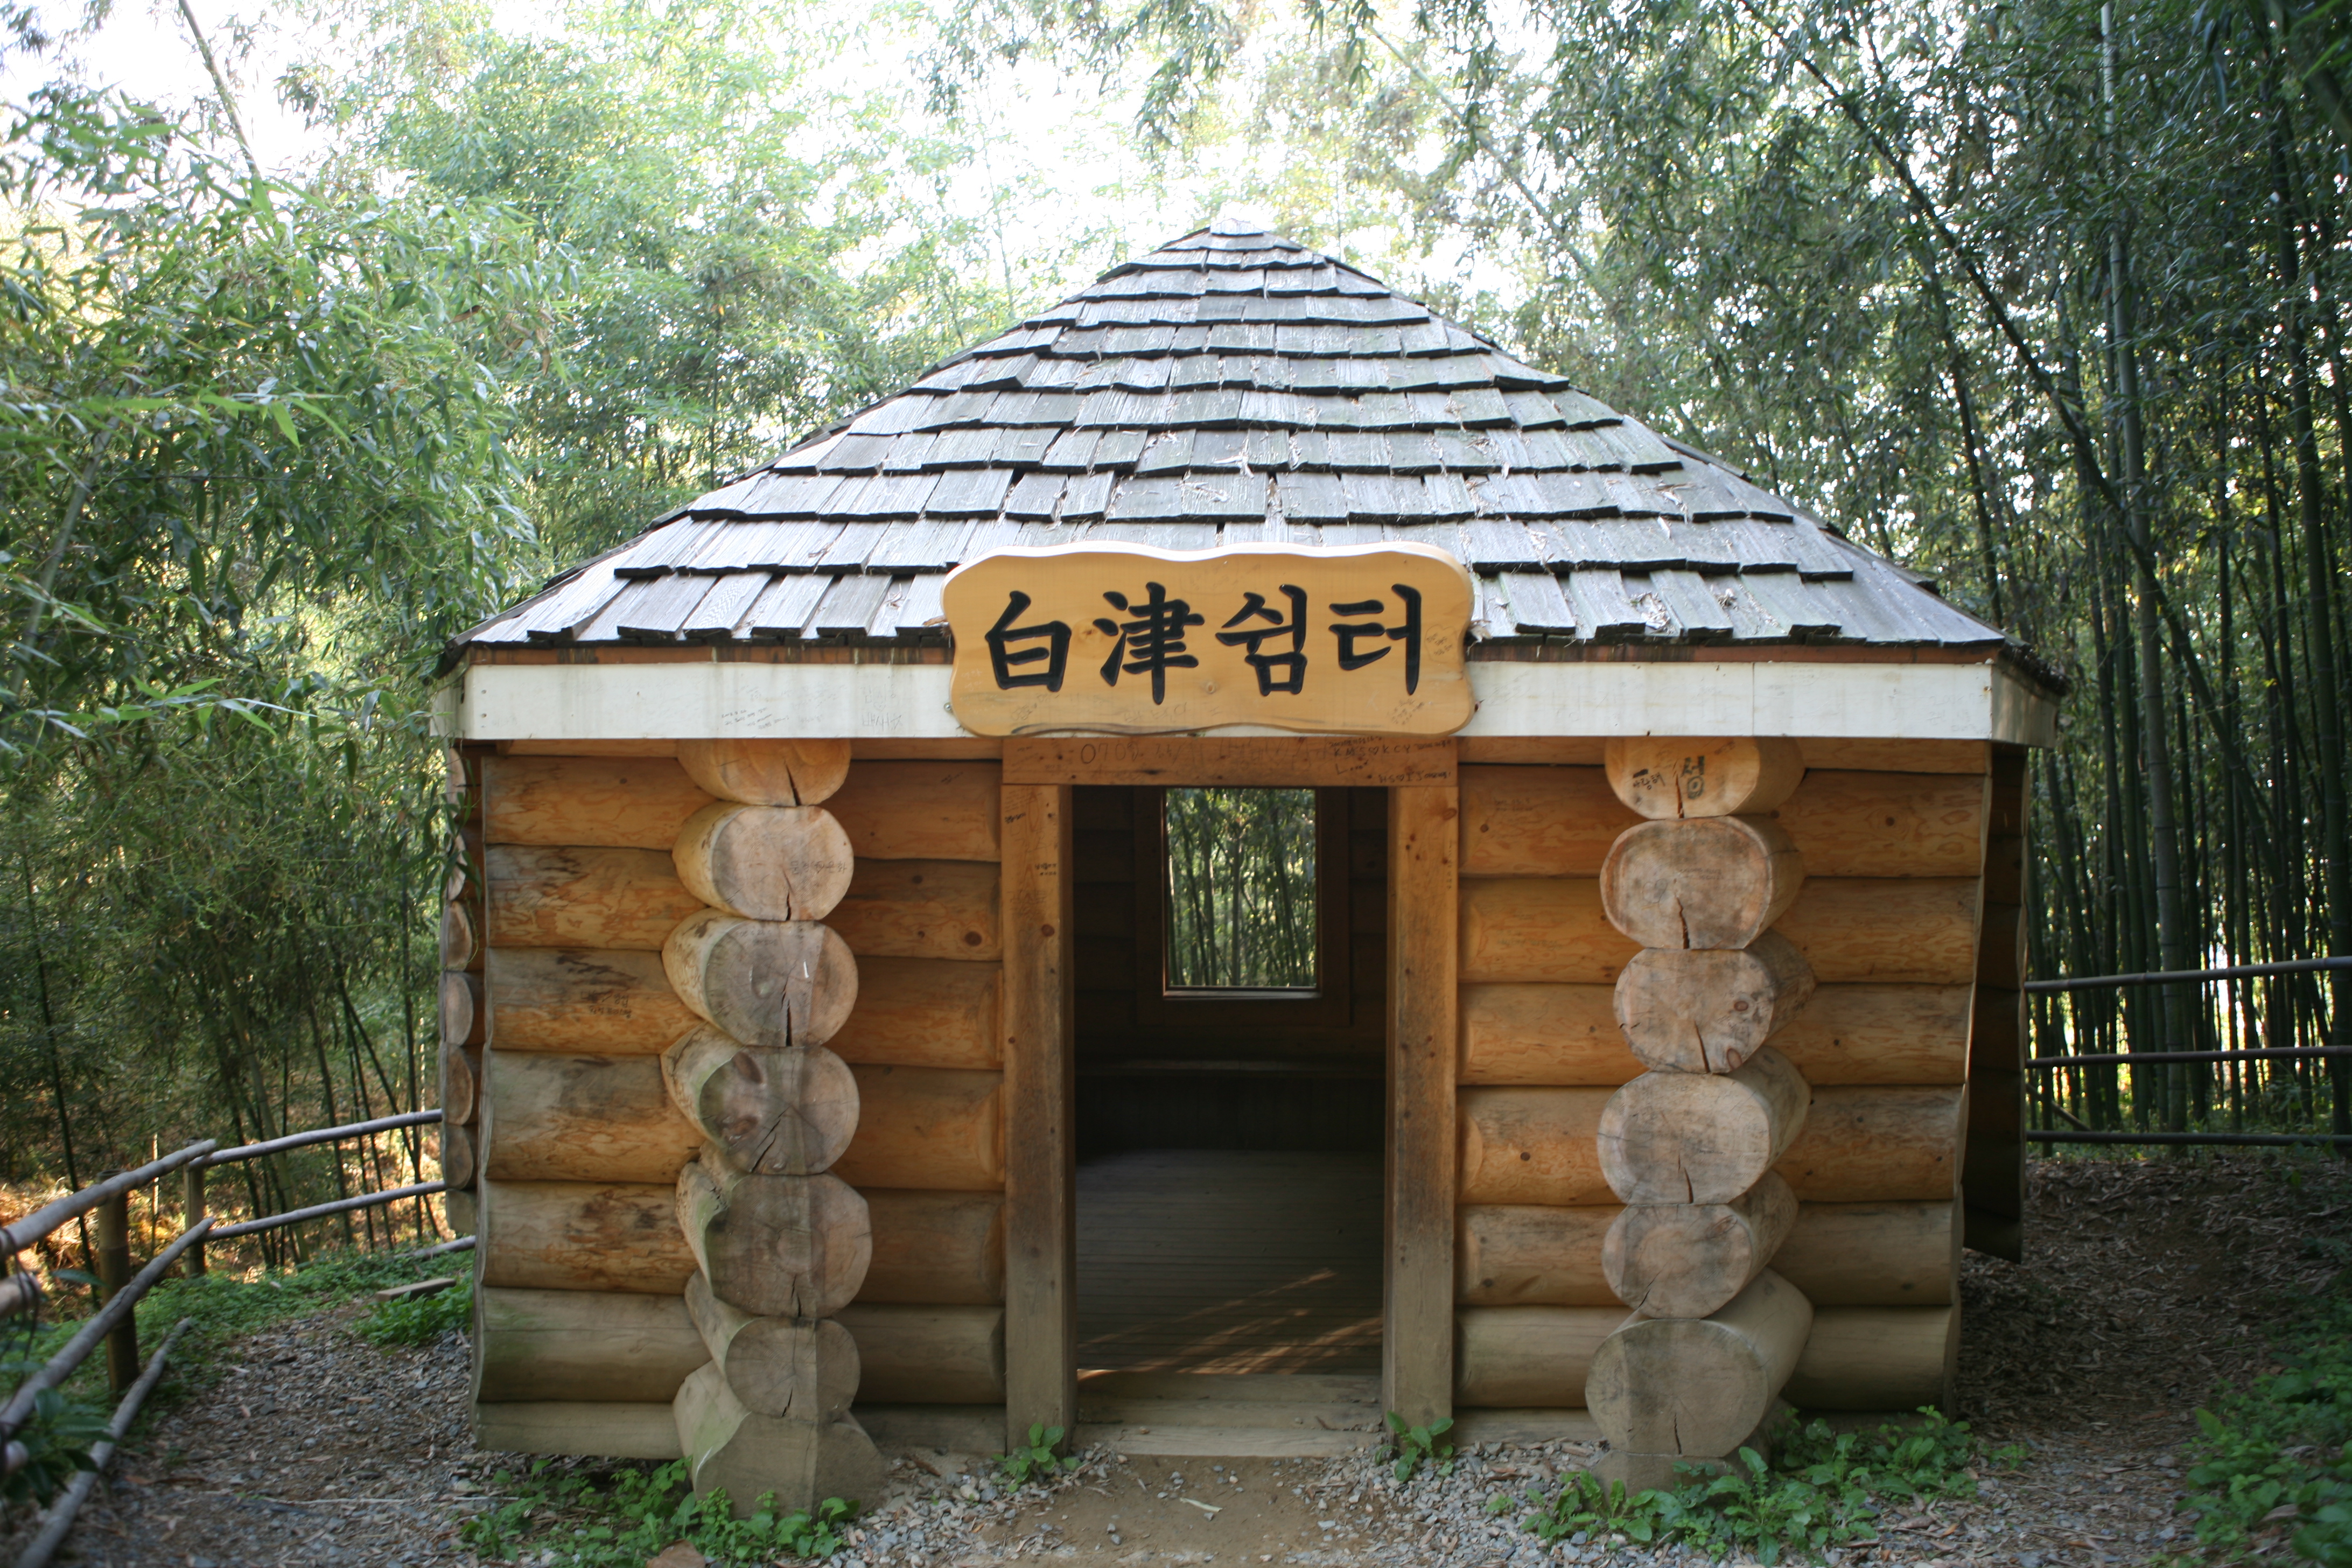 File:Korea-Damyang-Juknogwon-Bamboo Garden-Hut-01.jpg - Wikimedia ...